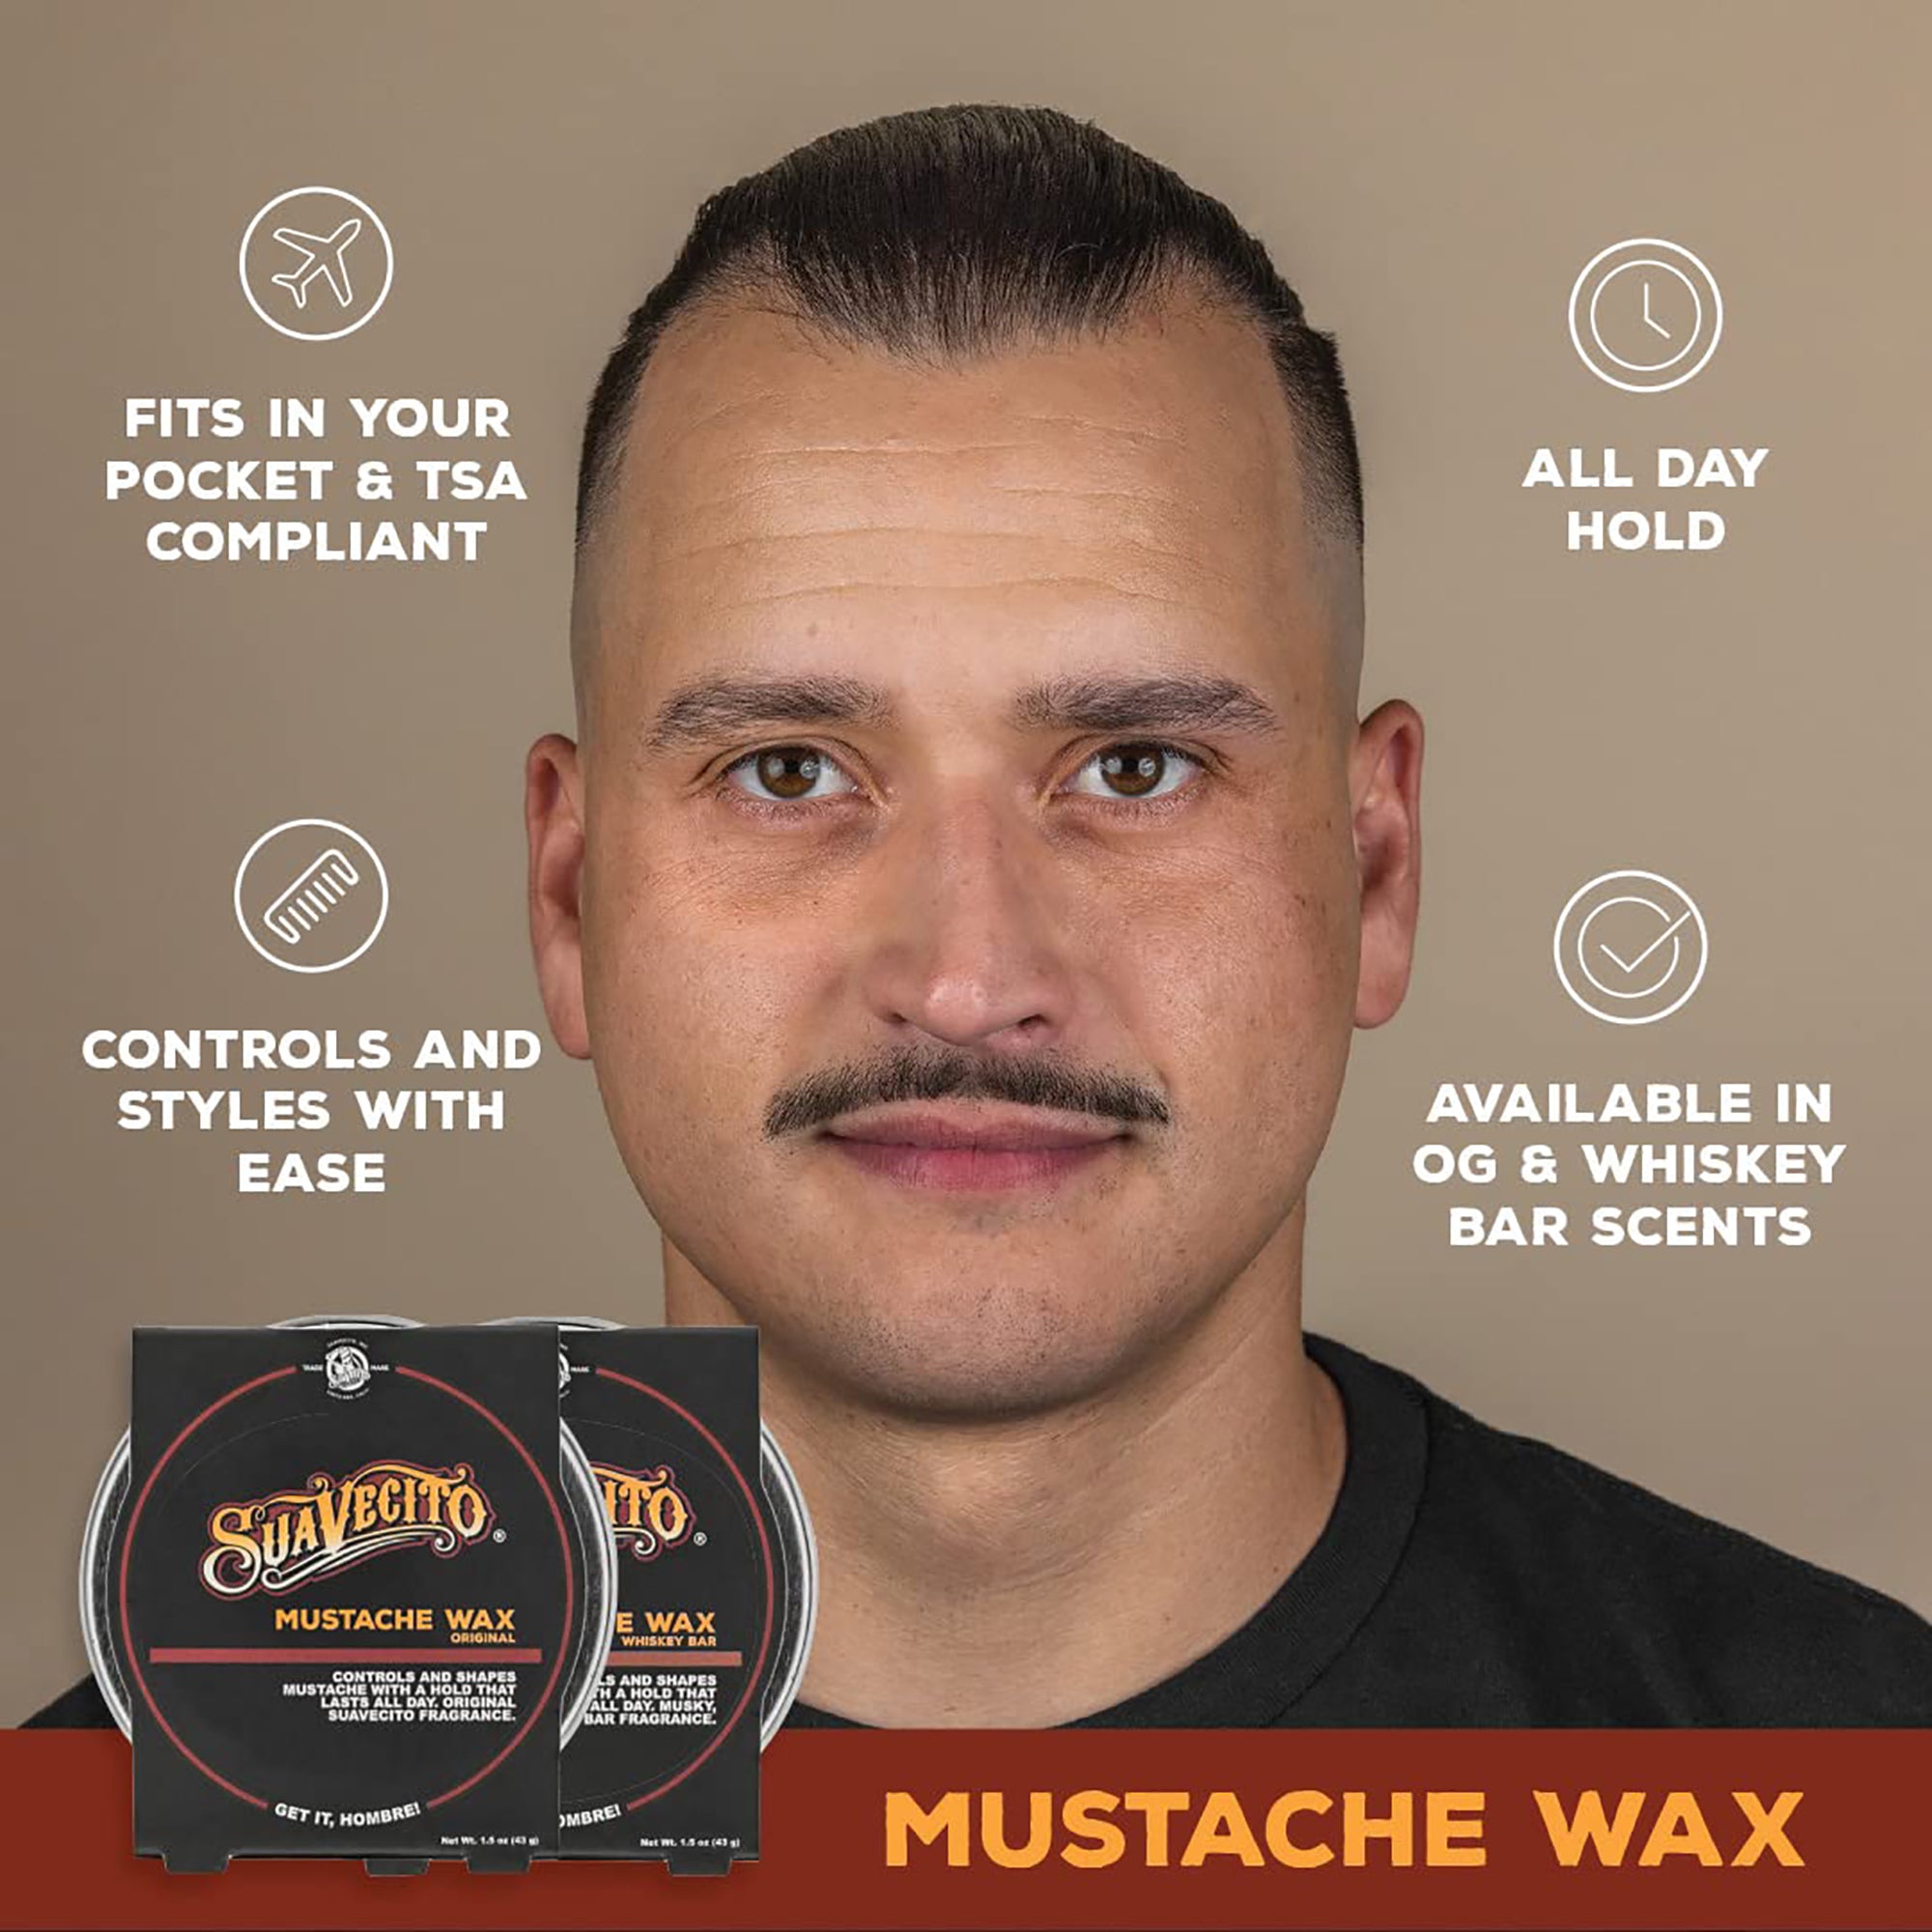 Suavecito Mustache Wax / Original Scent